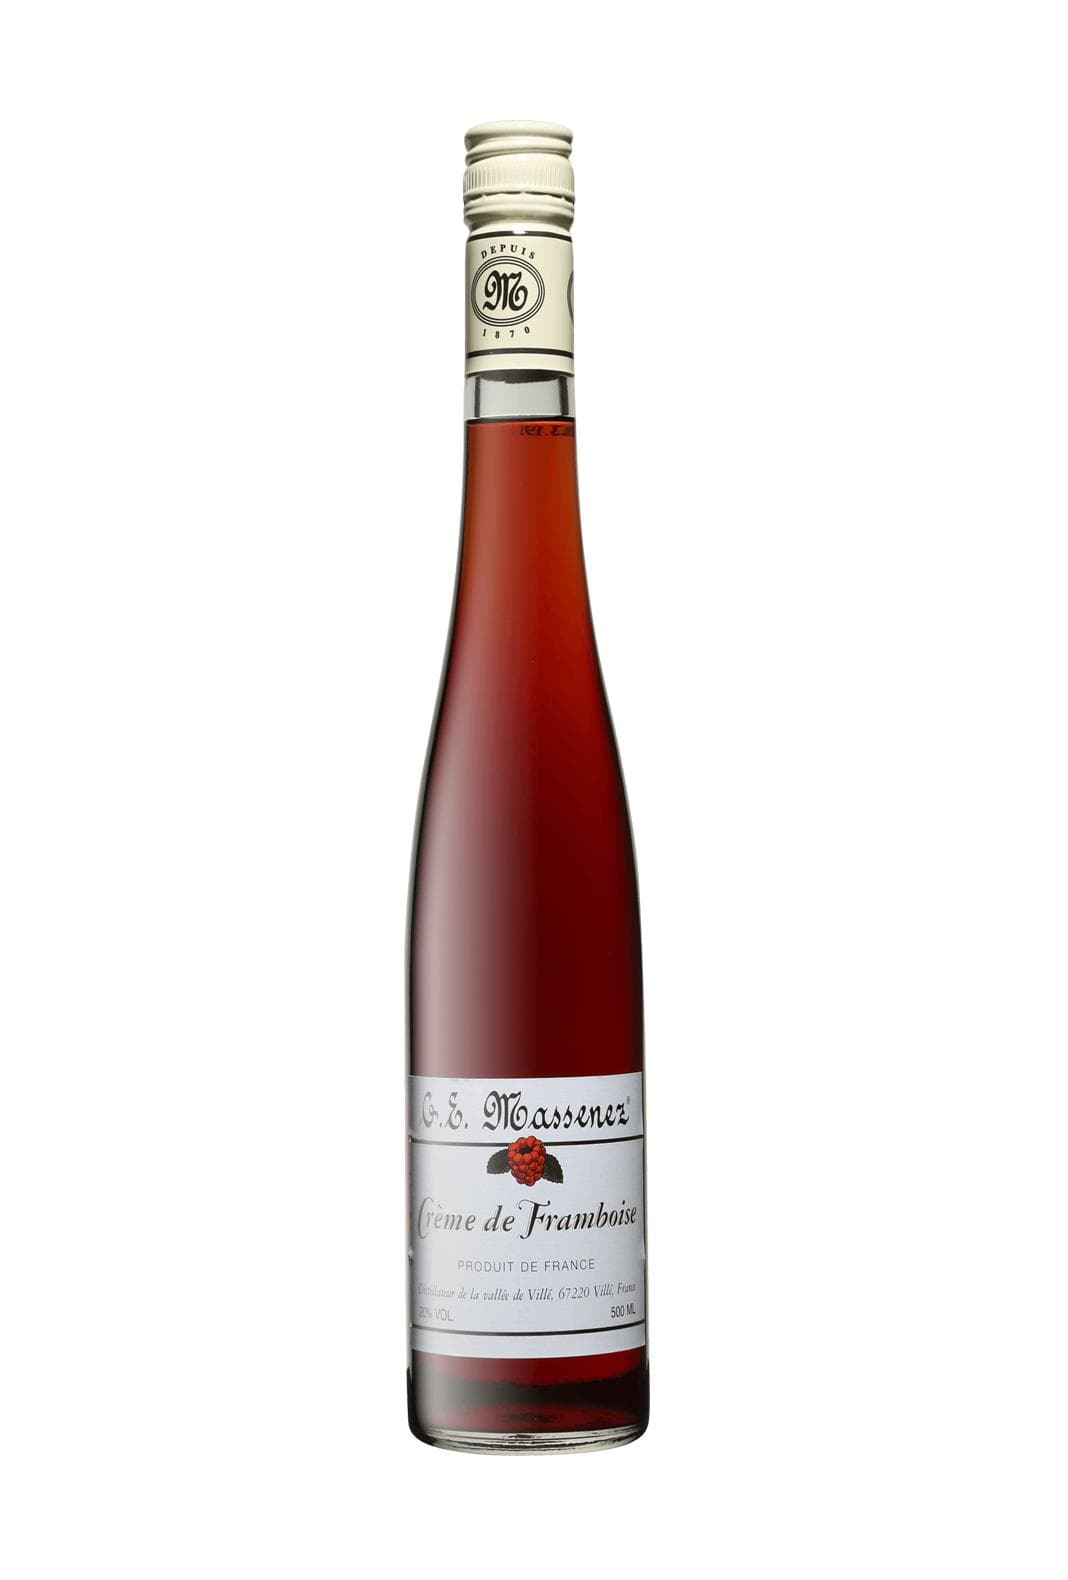 Massenez Liqueur Creme de Framboise (Raspberry) 20% 500ml | Liqueurs | Shop online at Spirits of France